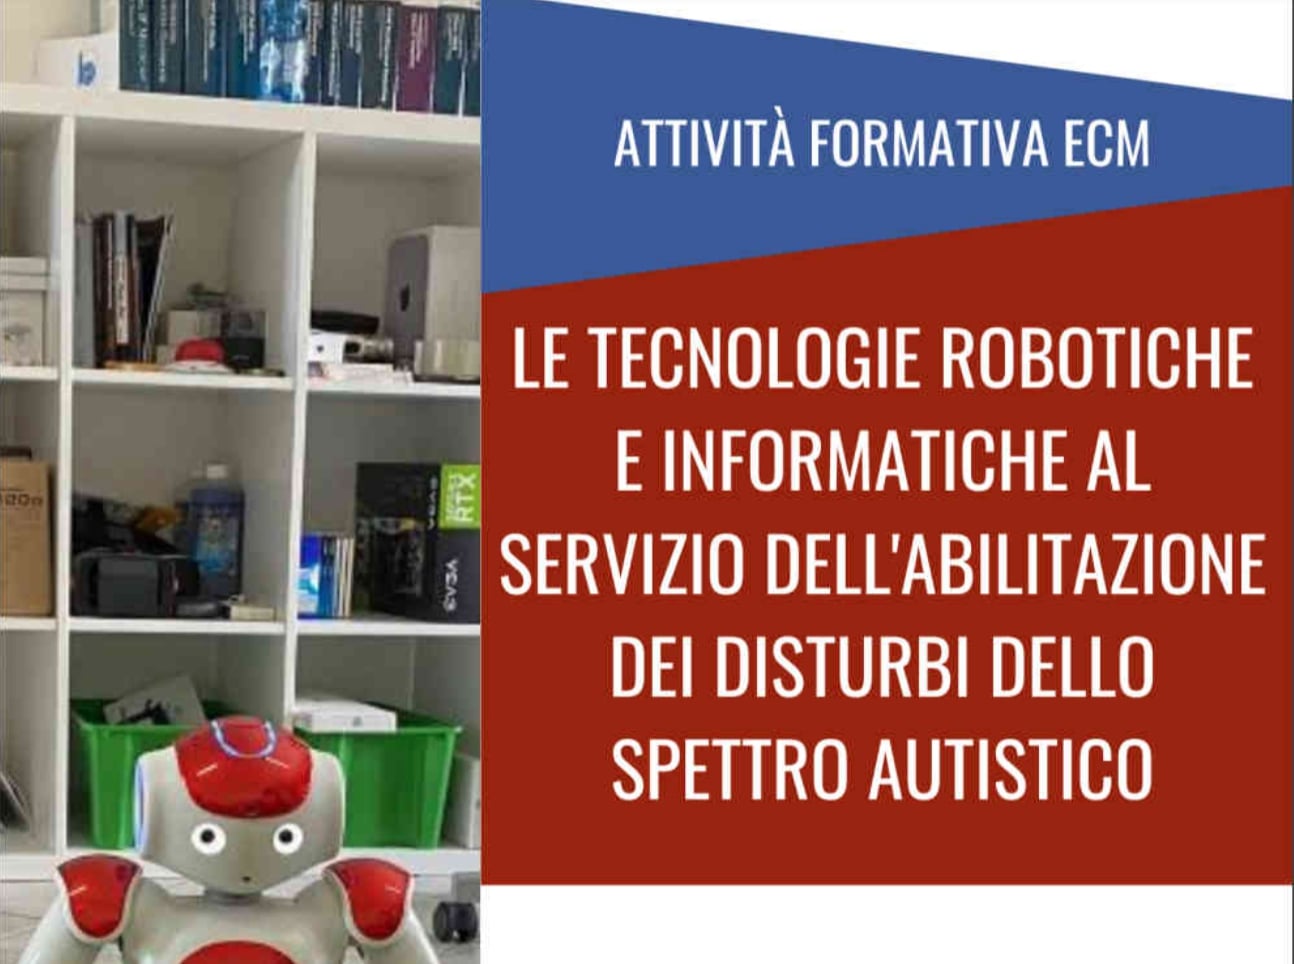 Battiati, convegno sabato 11 marzo sulle tecnologie robotiche e informatiche per l’autismo